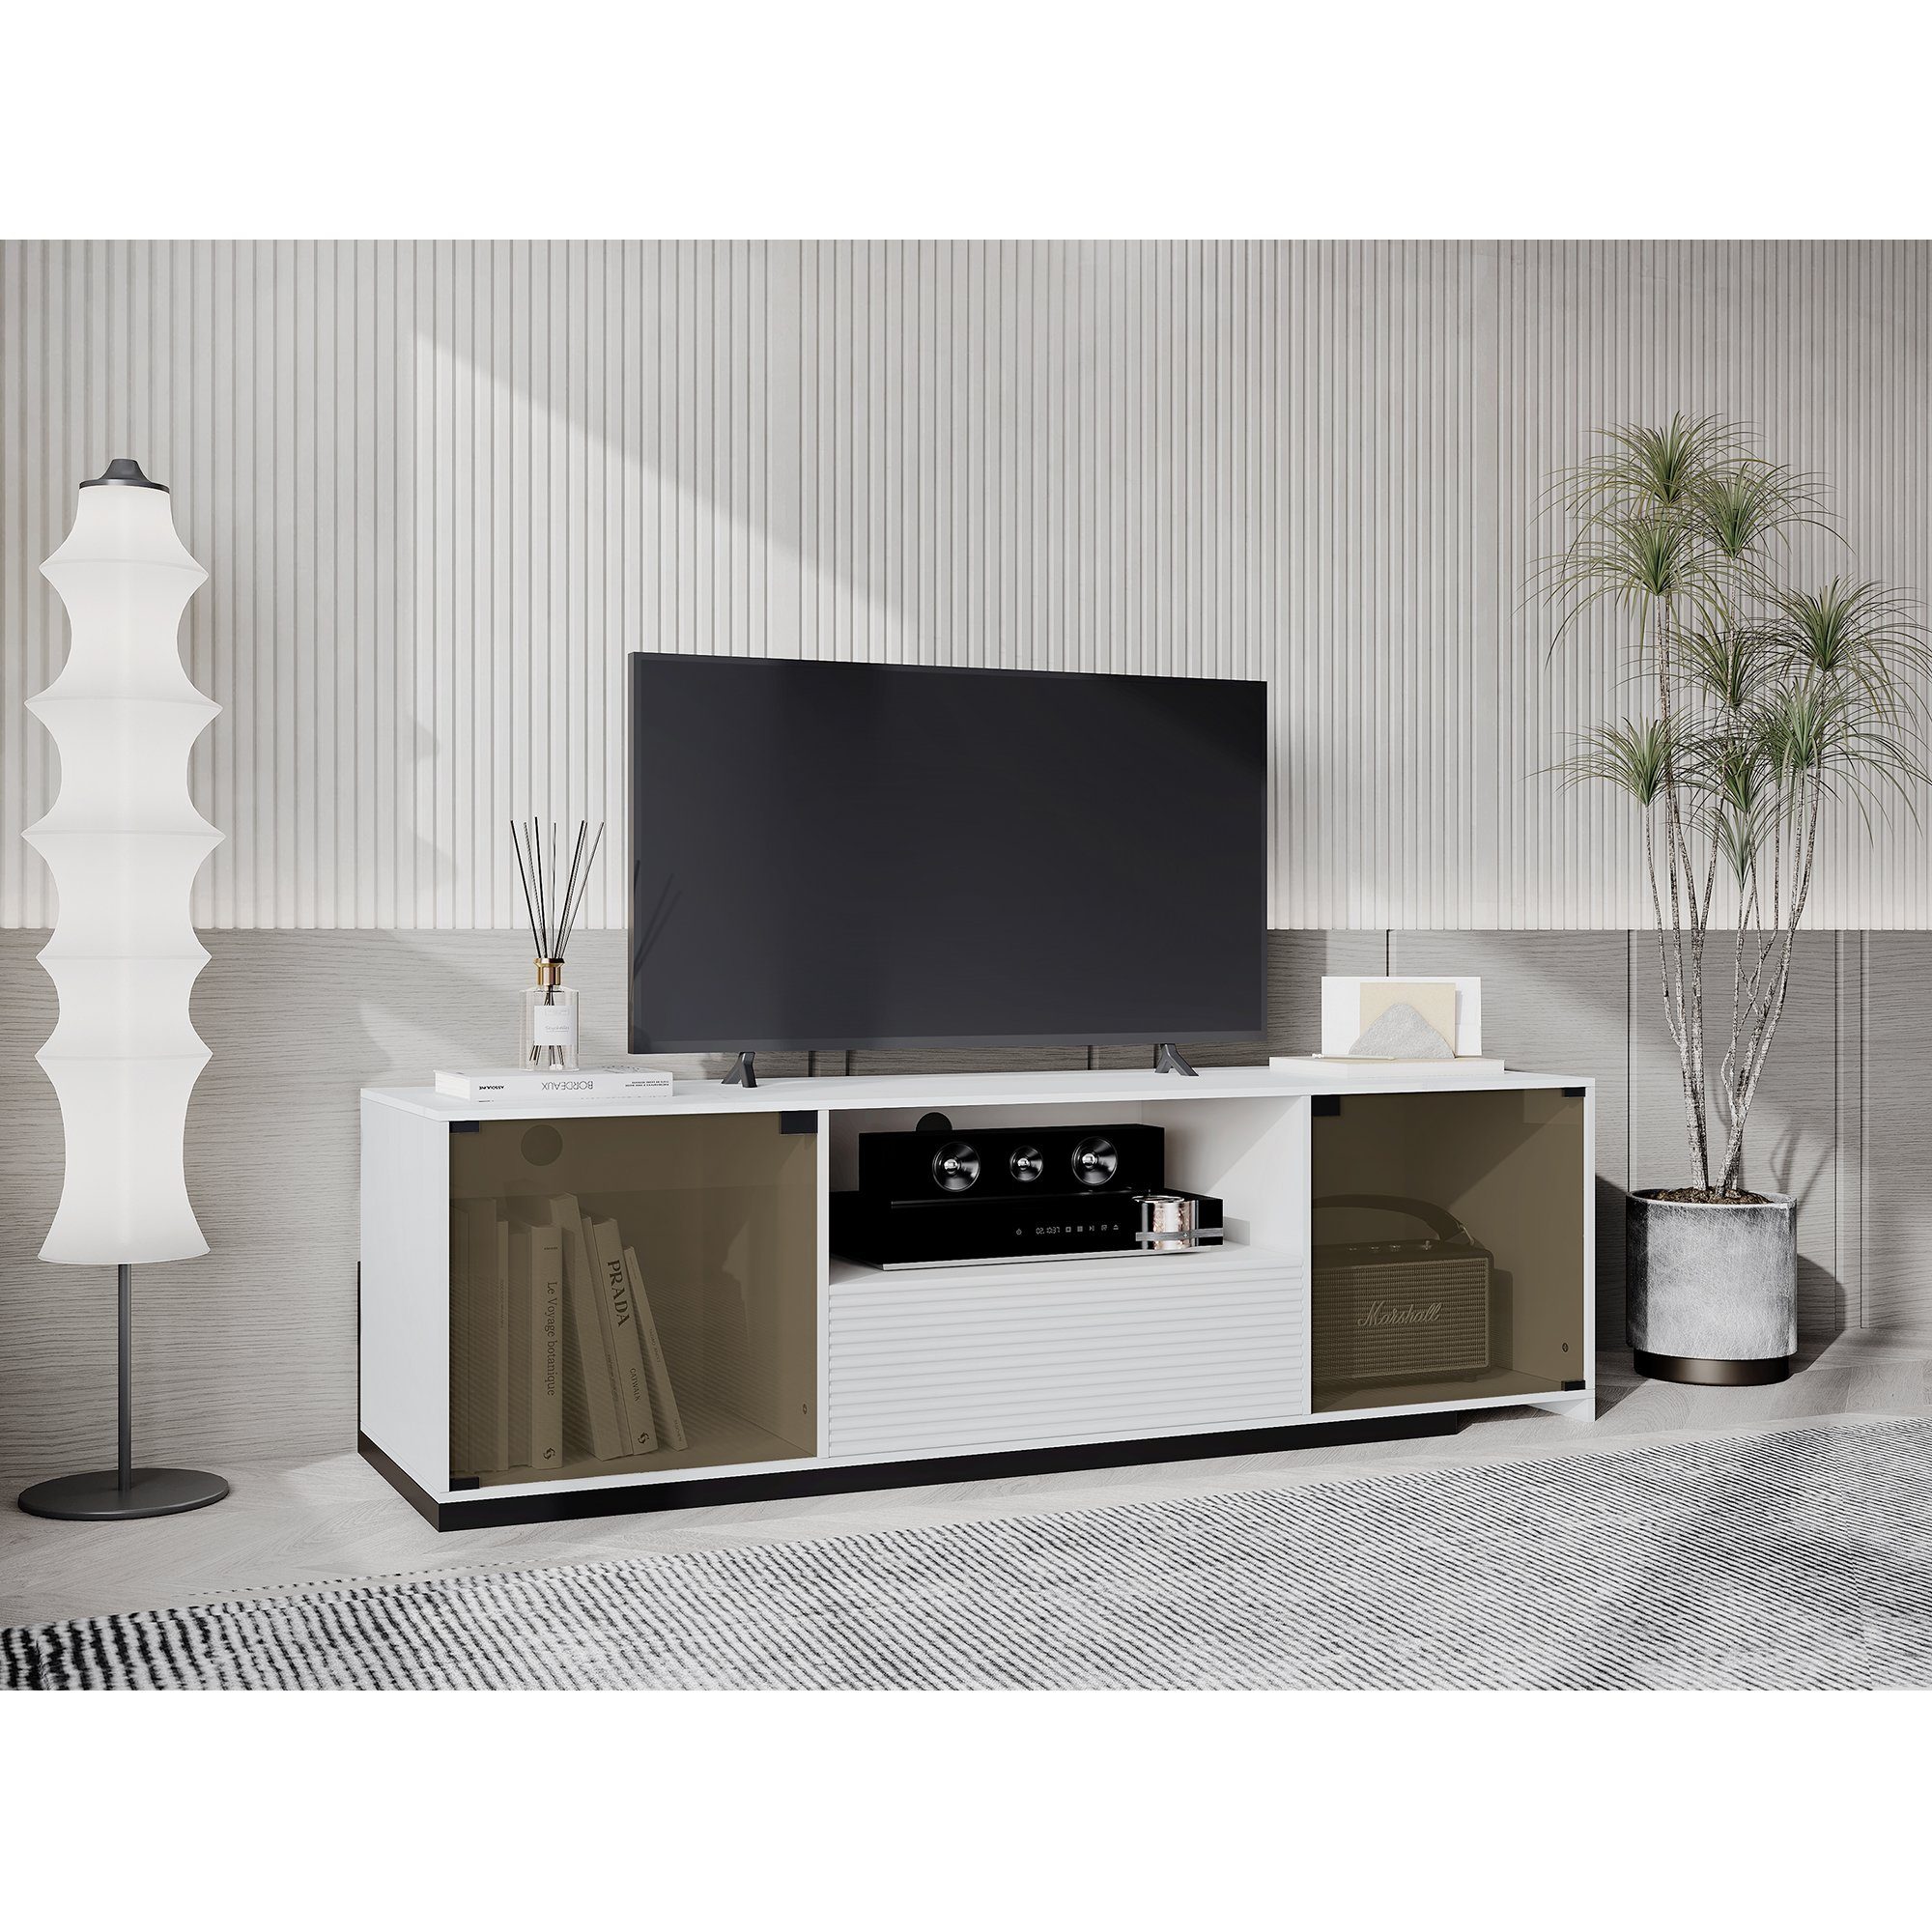 OKWISH TV-Schrank TV-Ständer mit L ED-Beleuchtung (für einen 60-Zoll-Fernseher, marmorgeäderter Tischplatte und elegantem Glasdesign) Mit 2 Türen, 1 Schublade und 1 offenem Fach